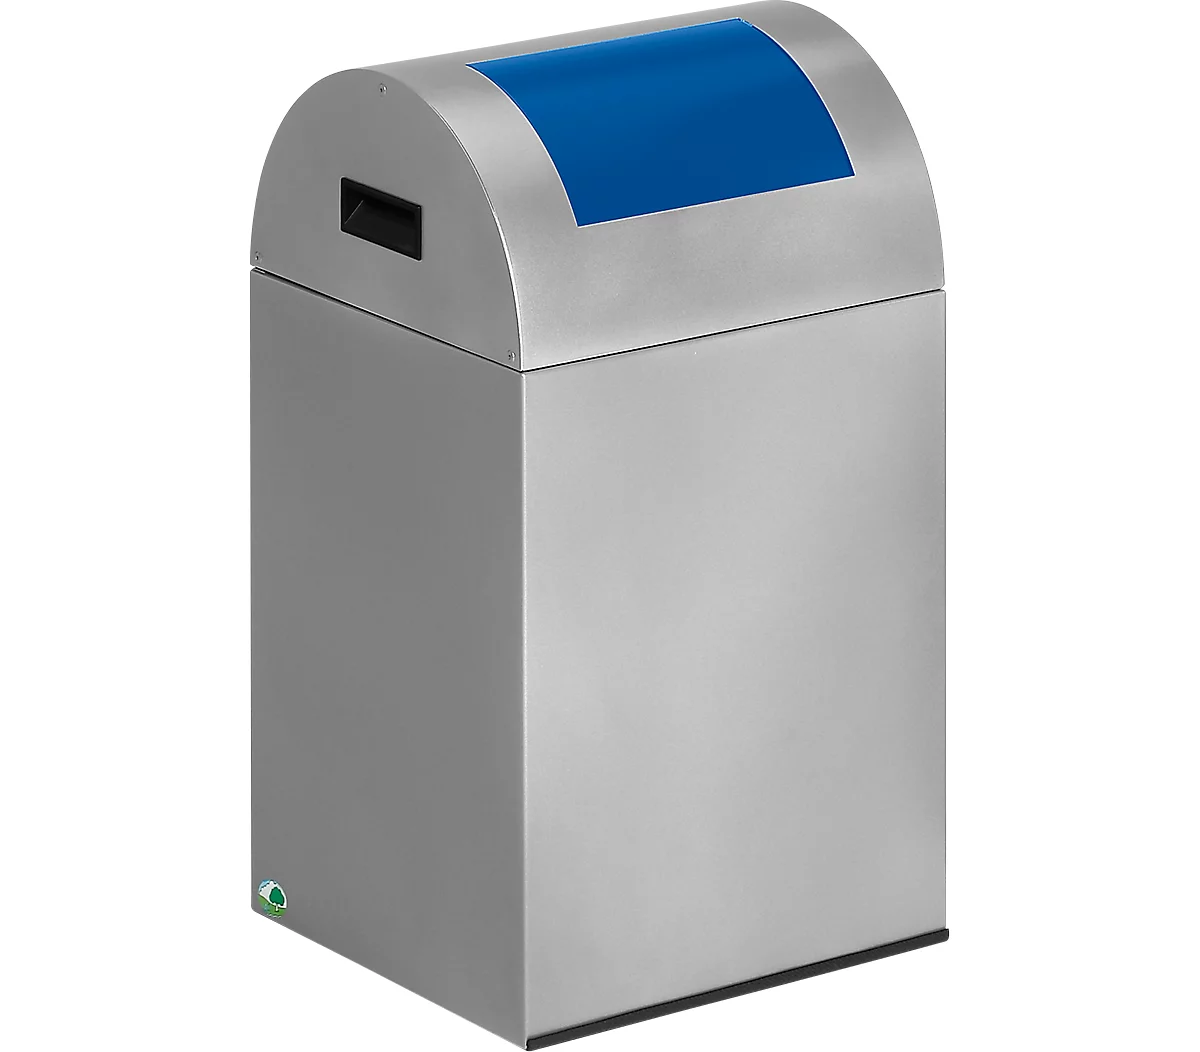 Zelfblussende afvalverzamelaar voor recycleerbaar afval 40R, zilver/blauw